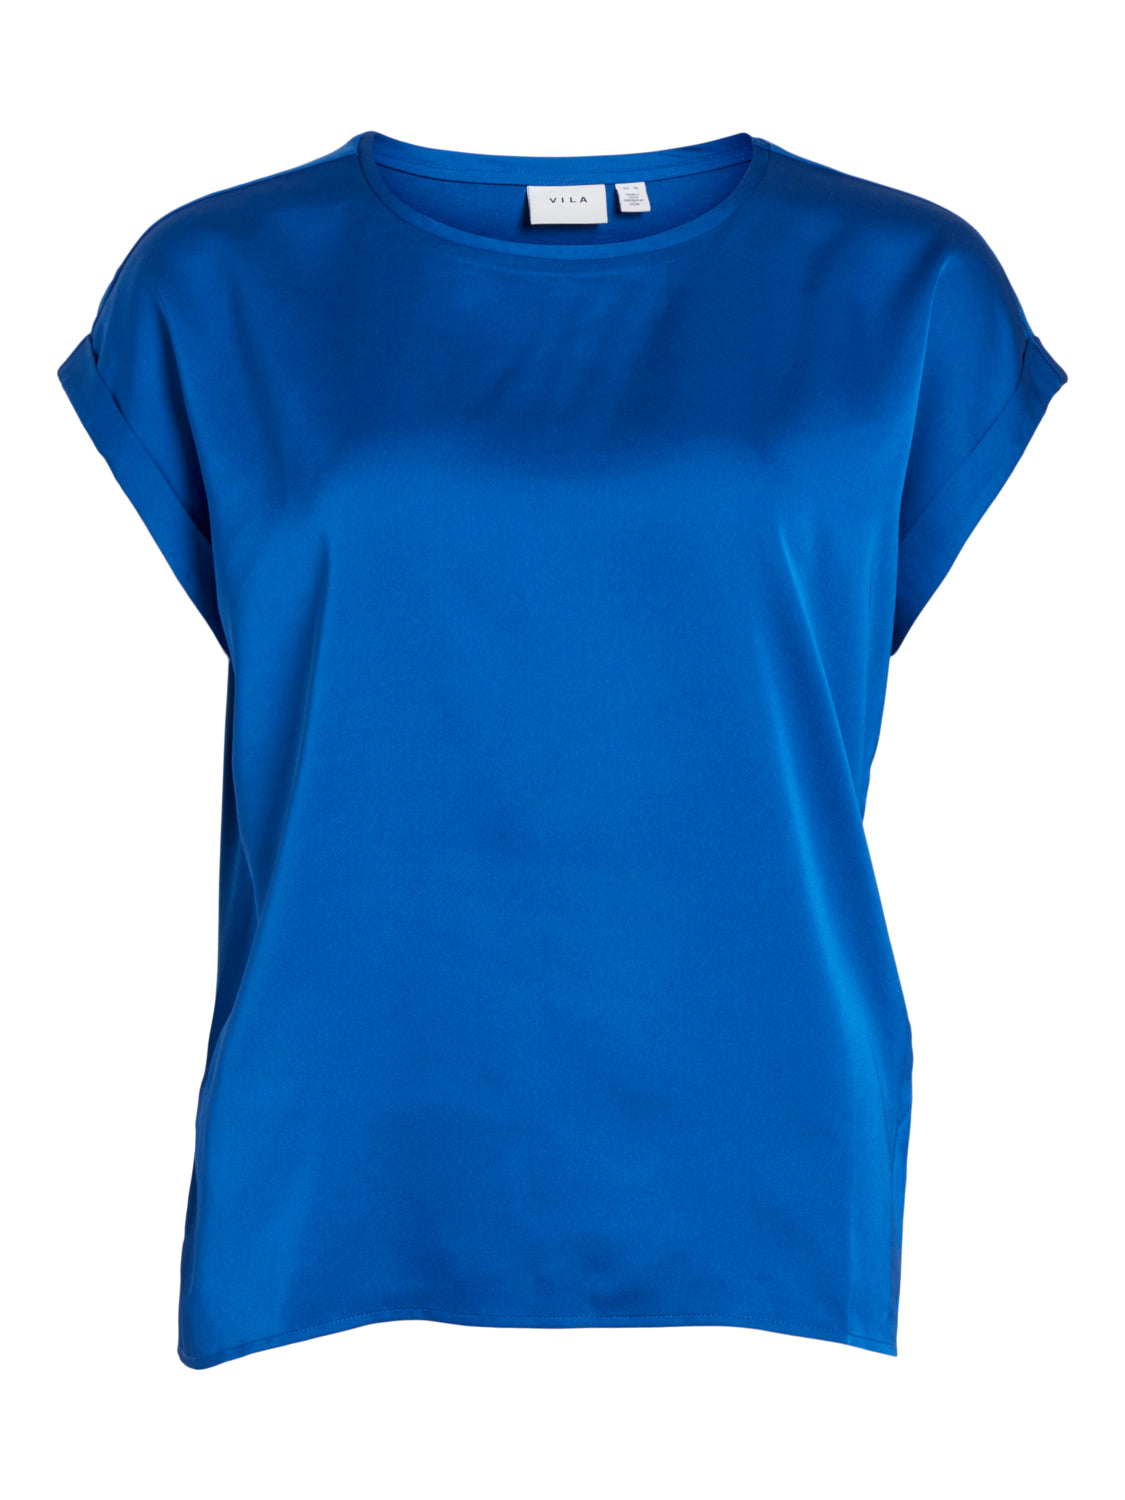 VIELLETTE T-Shirts & Tops - Lapis Blue